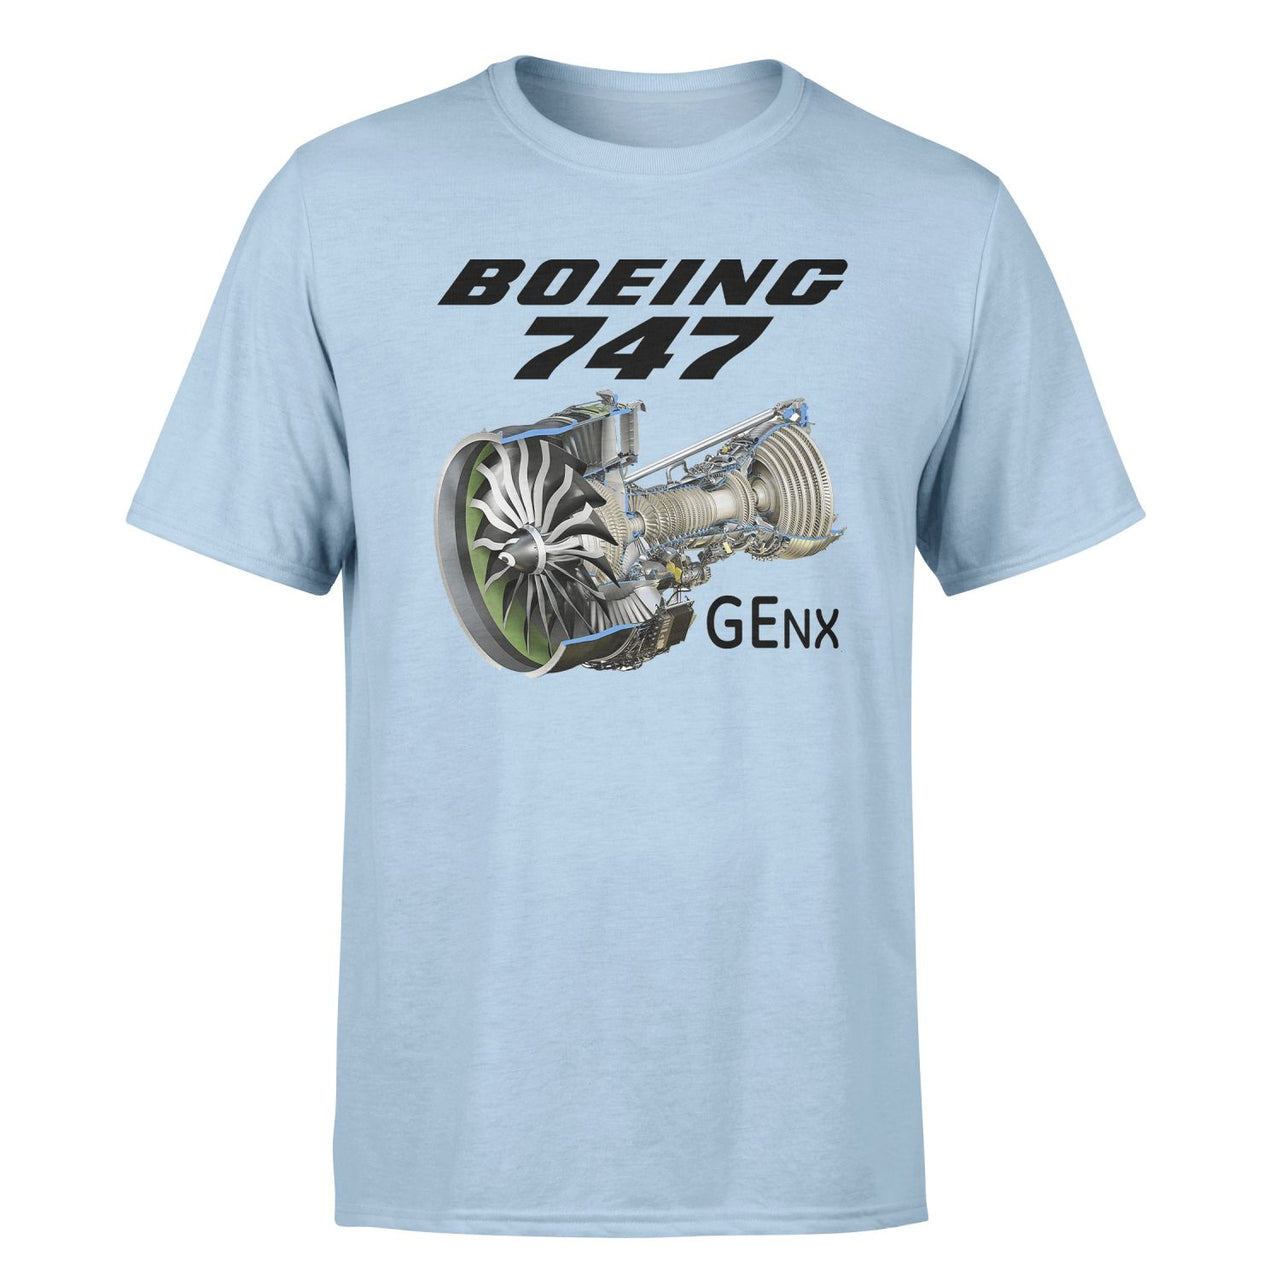 Boeing 747 & GENX Engine Designed T-Shirts